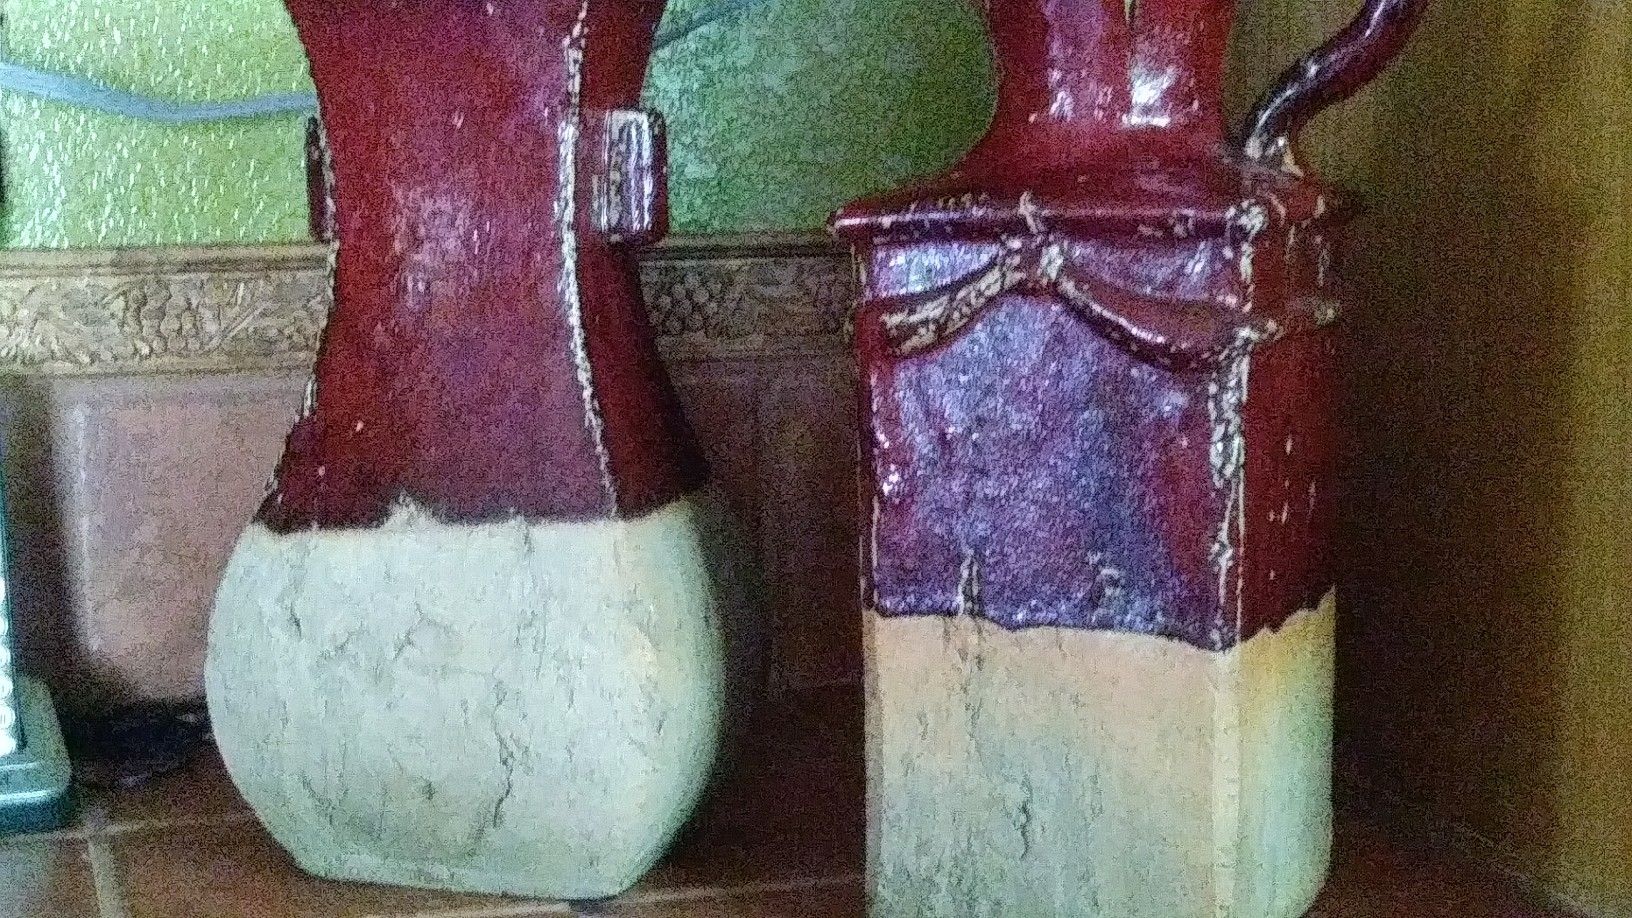 Clay Vases